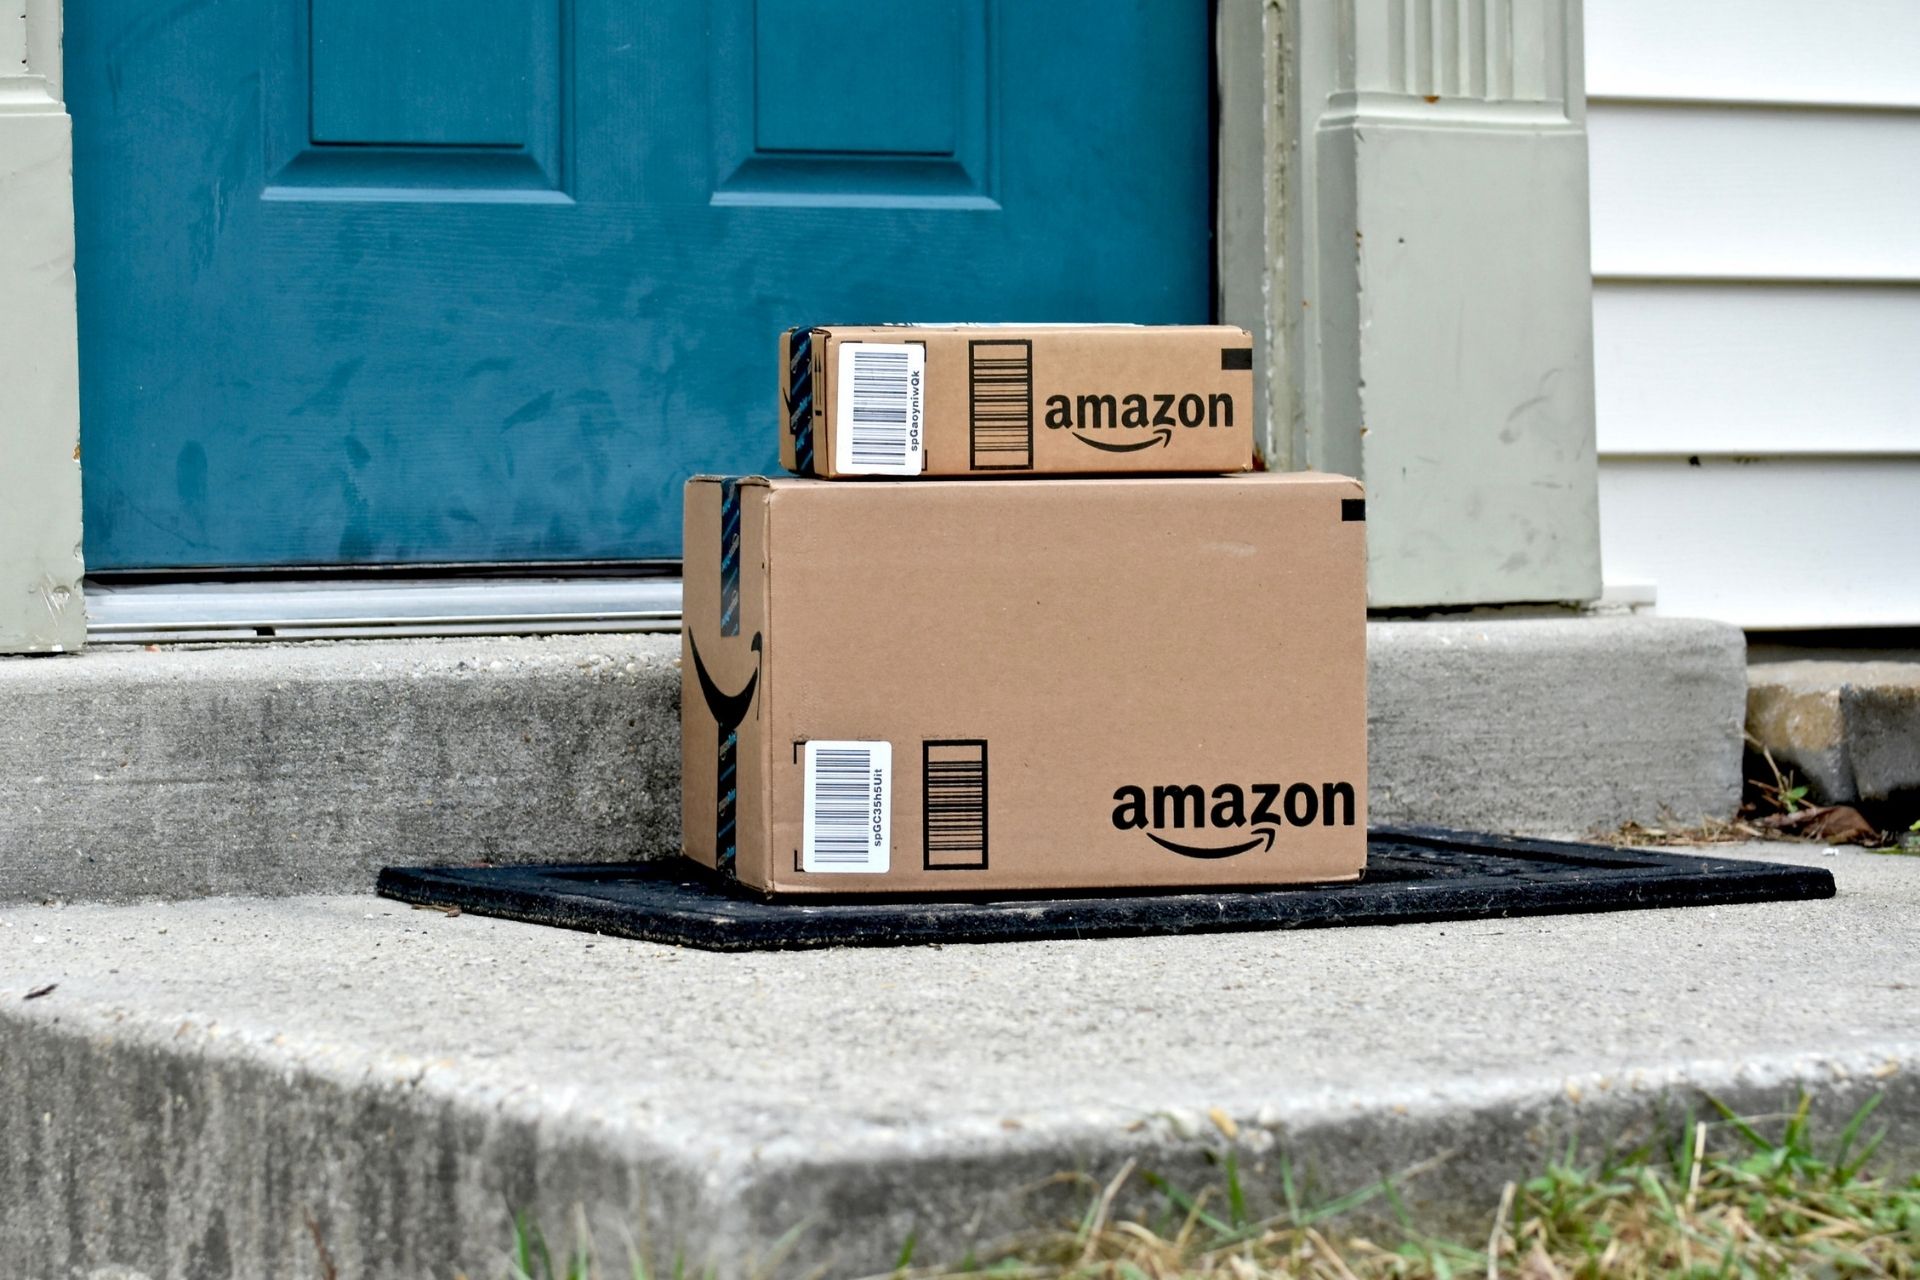 La Amazon SEO si sta rivelando di straordinaria importanza per posizionare al meglio i propri prodotti